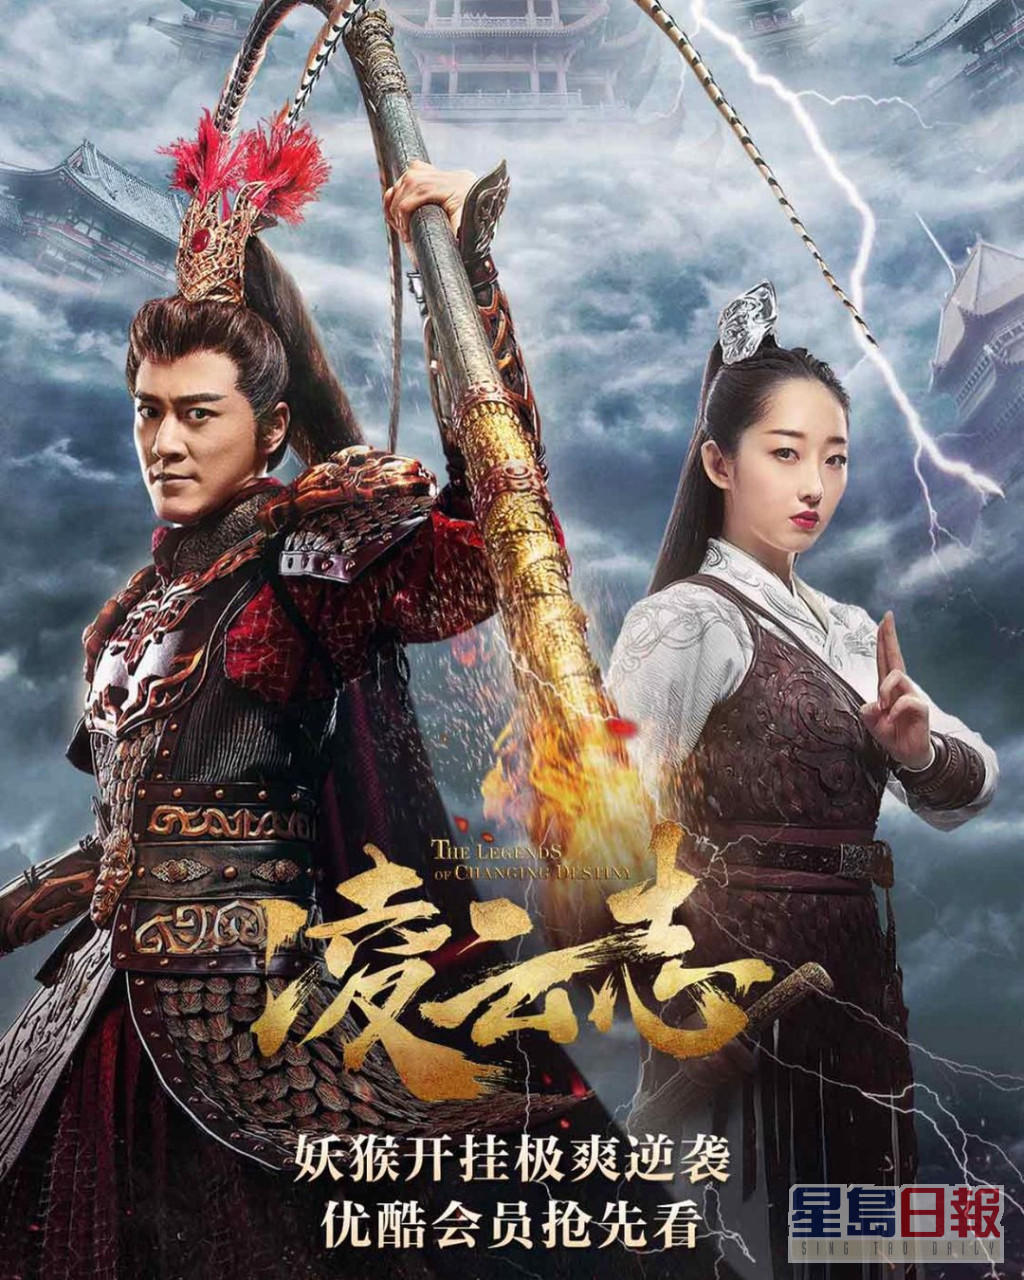 新作為與林峰領銜主演的電視劇《凌雲志》。